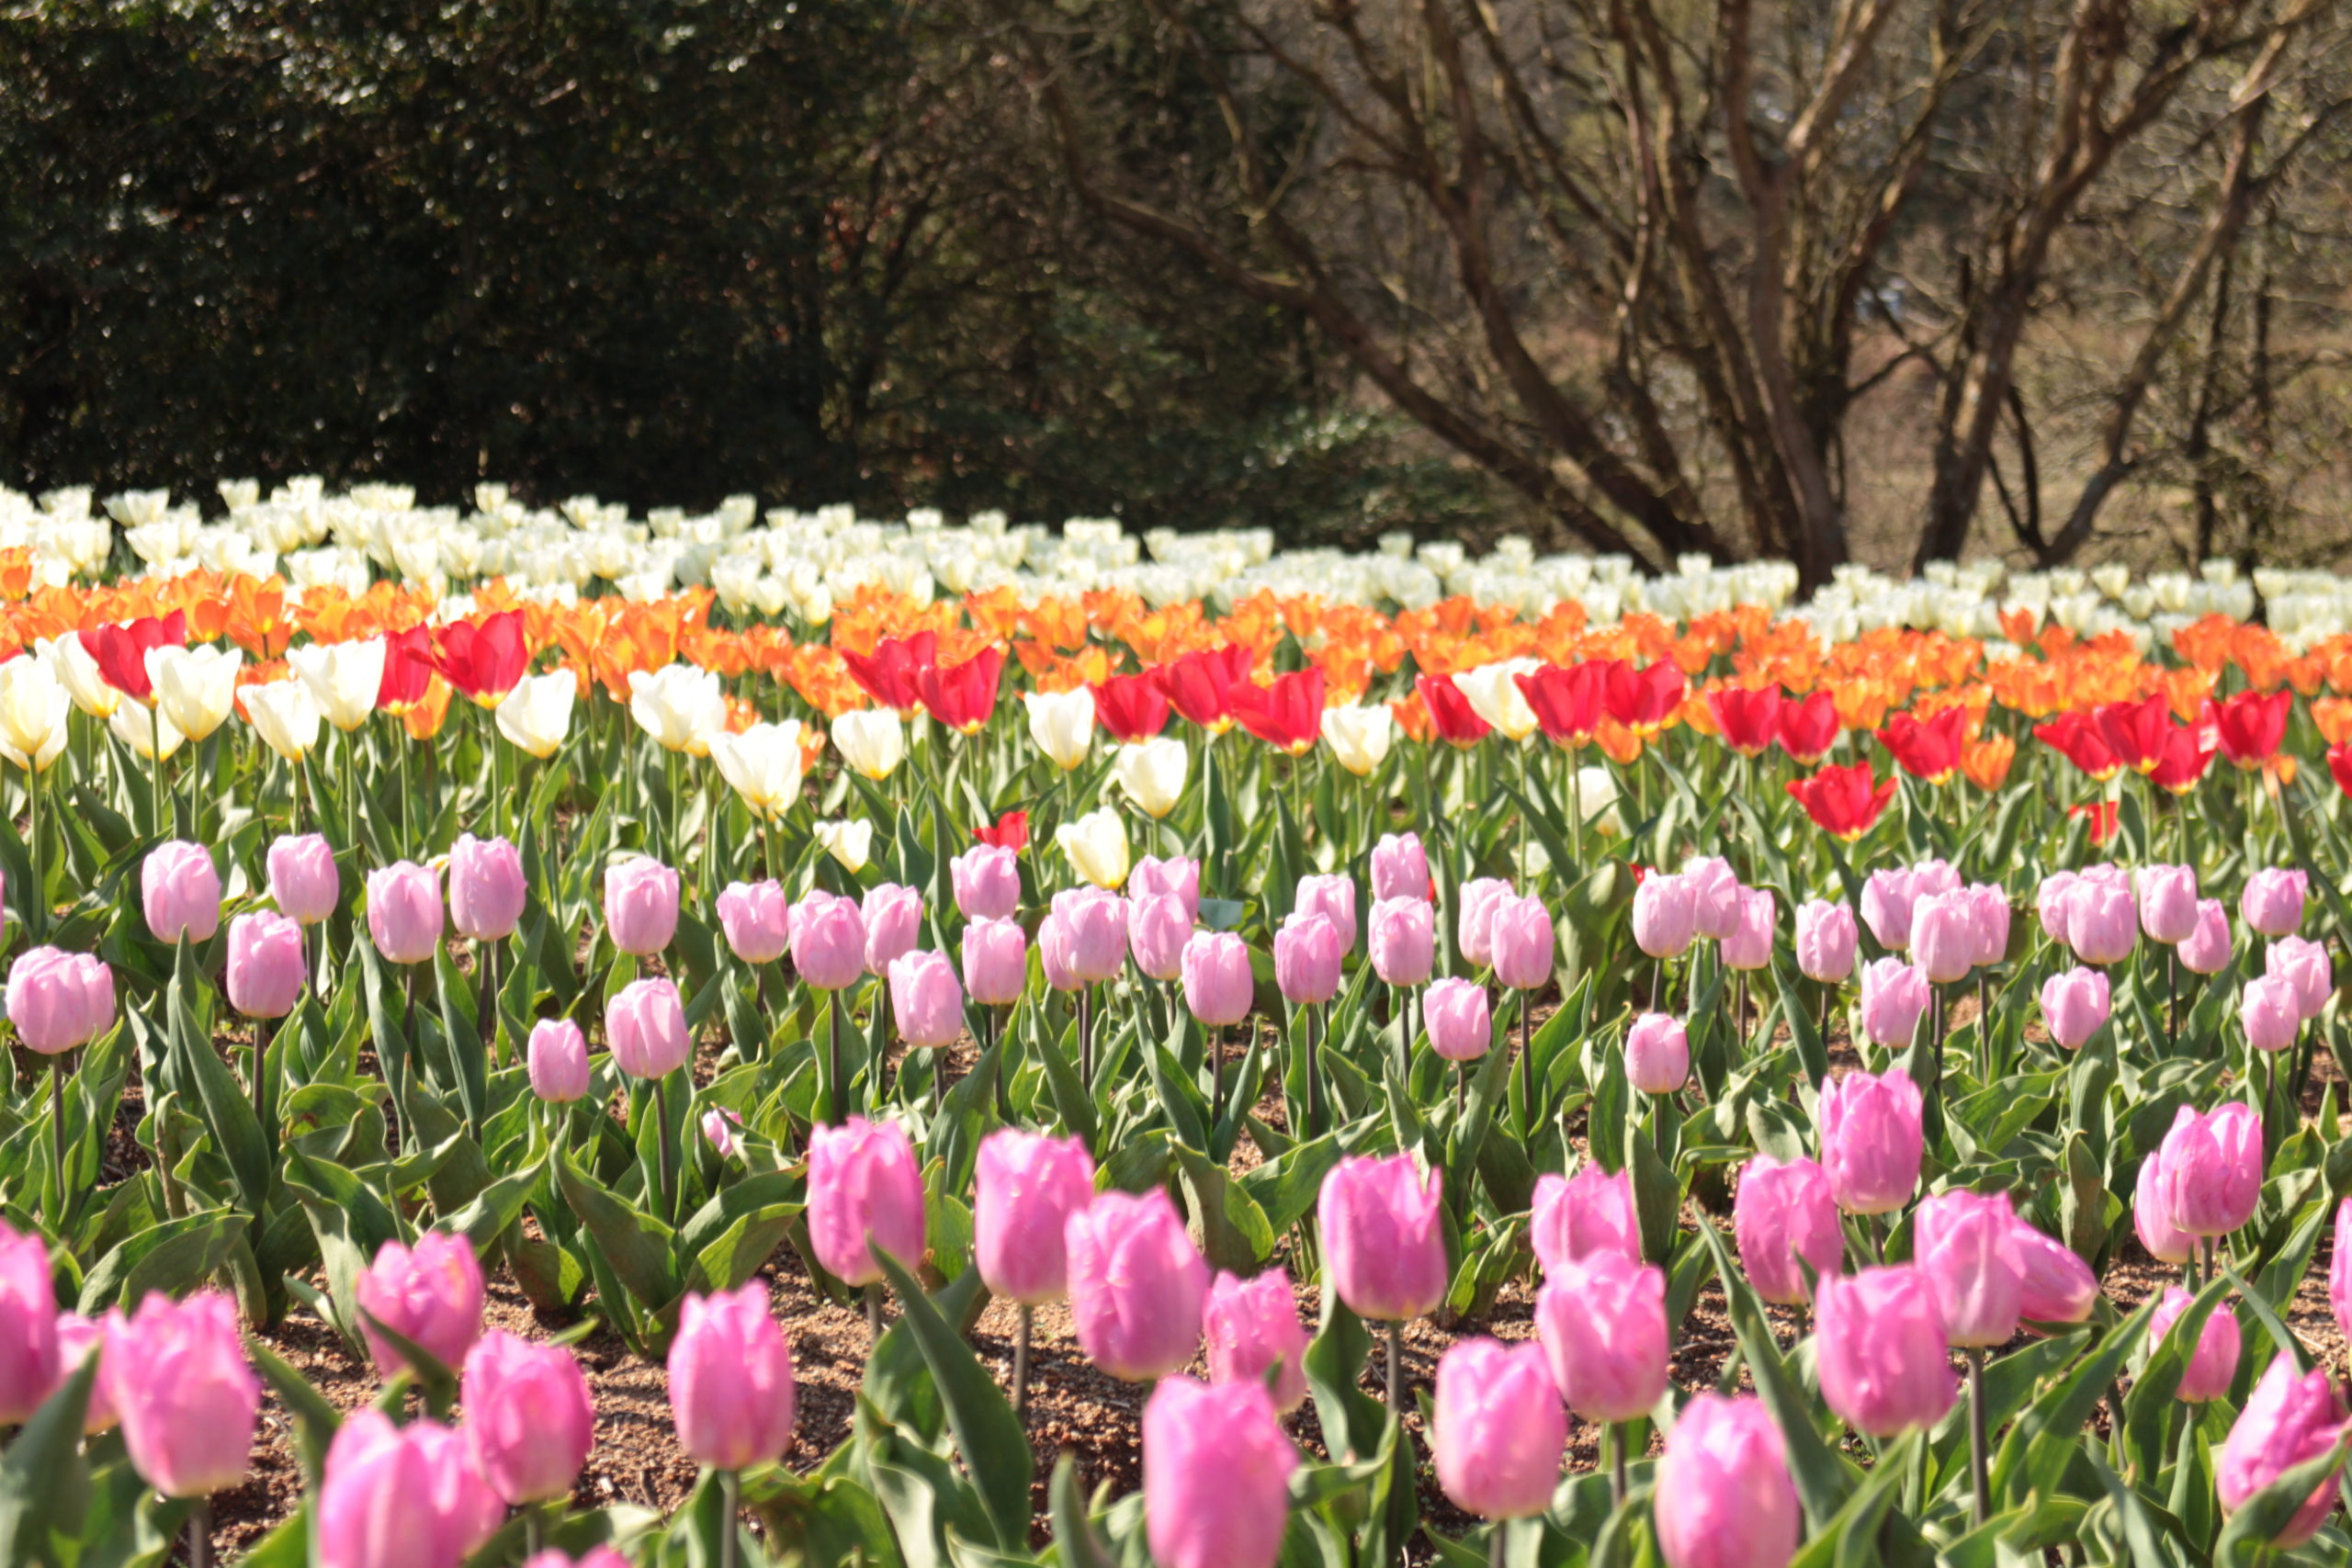 【Park open】Tulip【50-60% flowering】